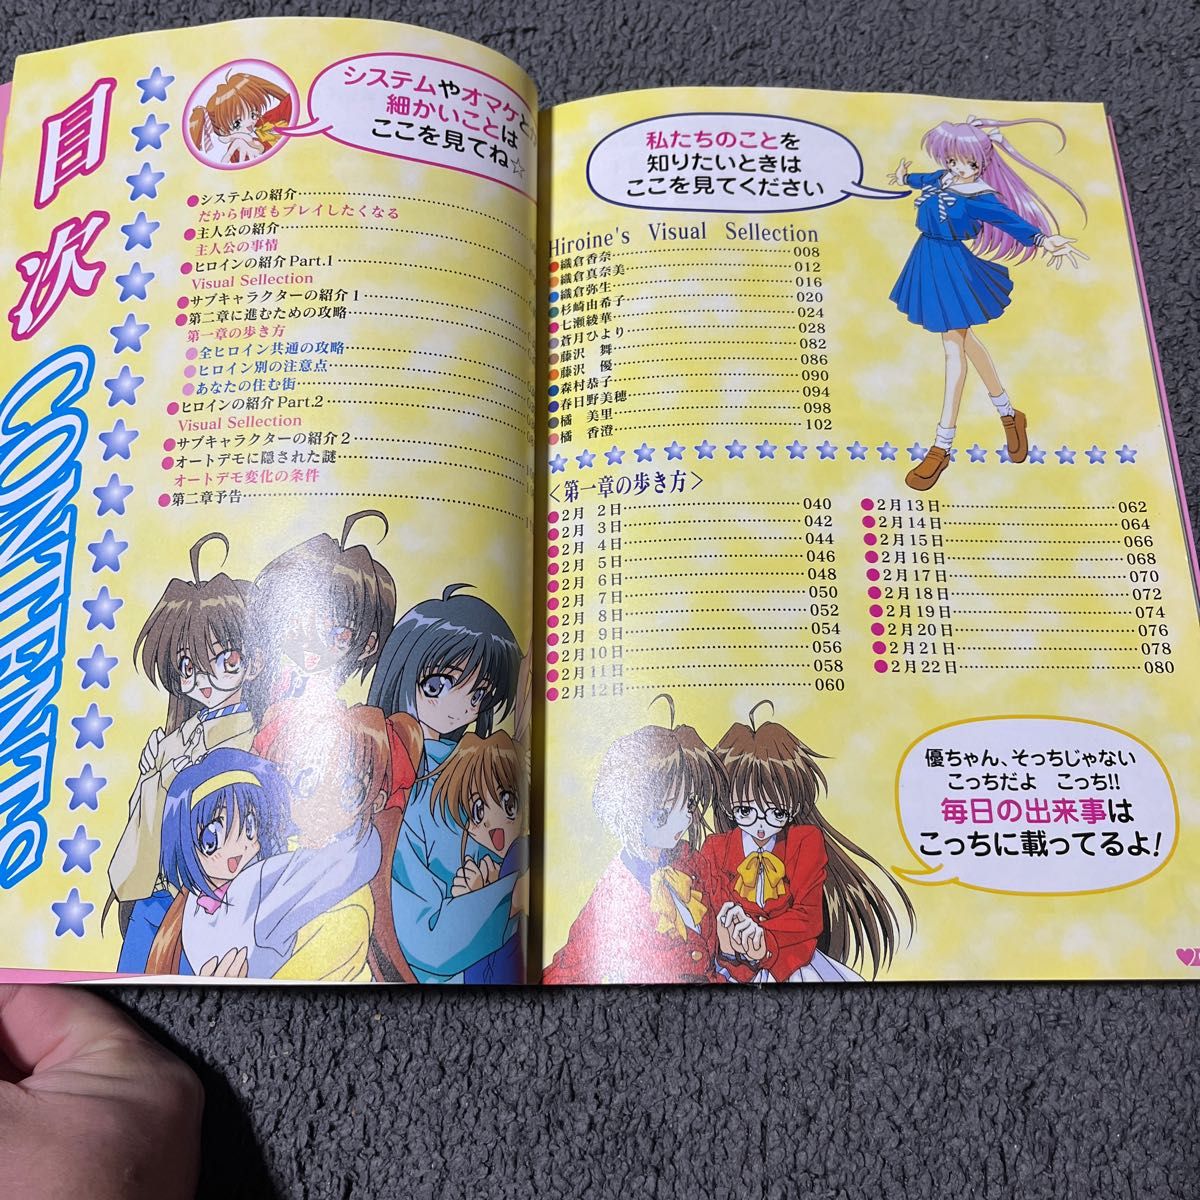 ゲーム攻略本　PS1 ファーストKISS☆物語 ビジュアルカレンダー